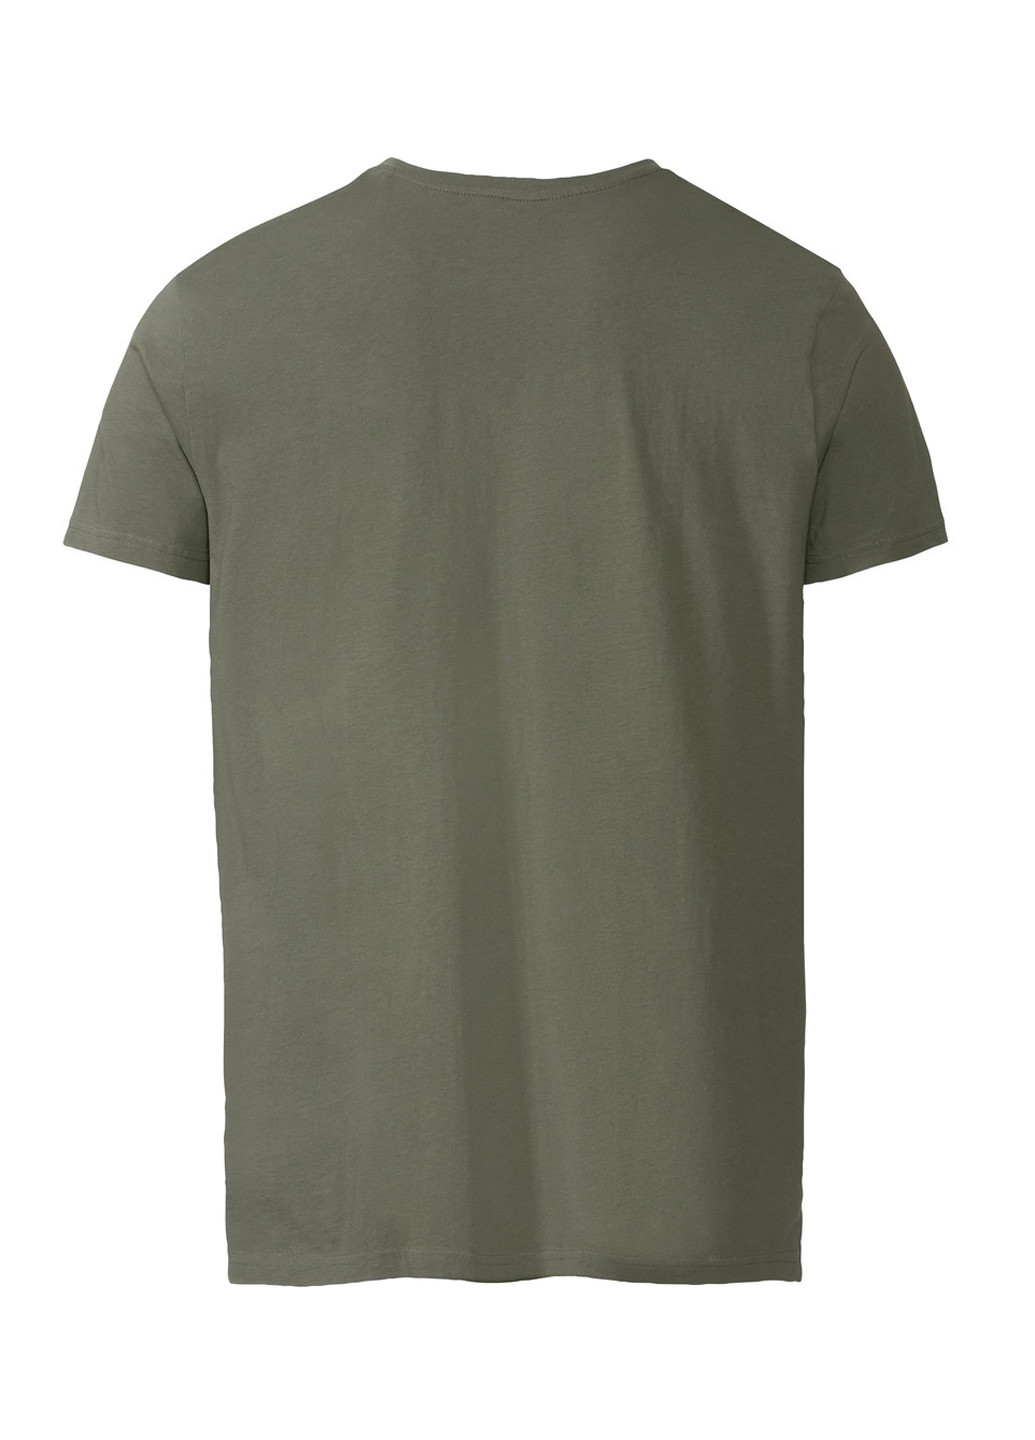 Хаки (оливковая) футболка Livergy